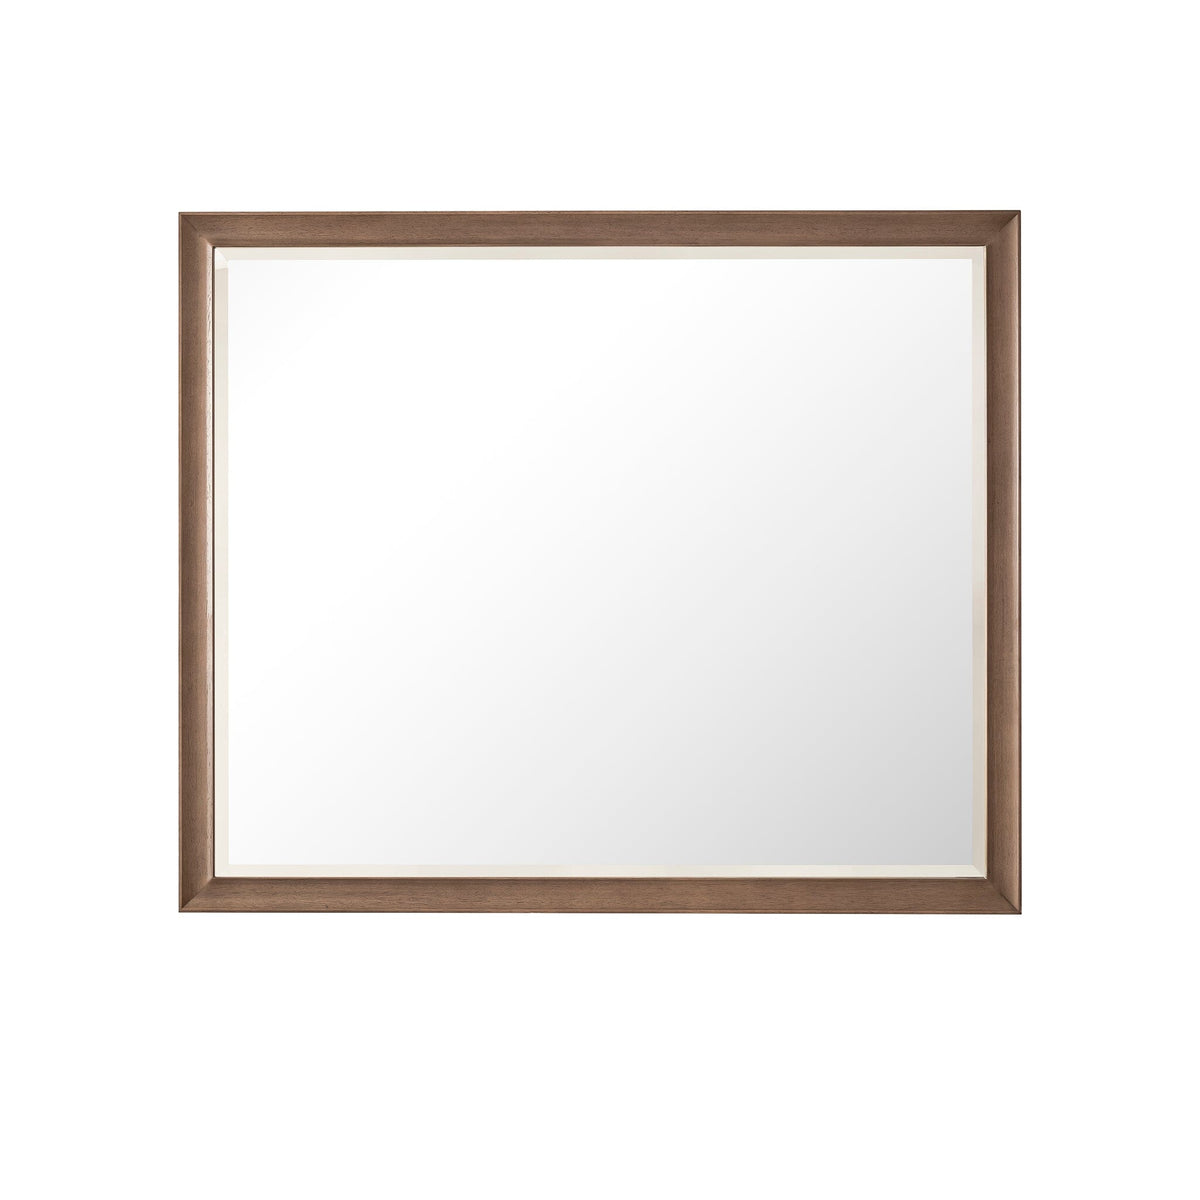 48" Glenbrooke Mirror, Whitewashed Walnut